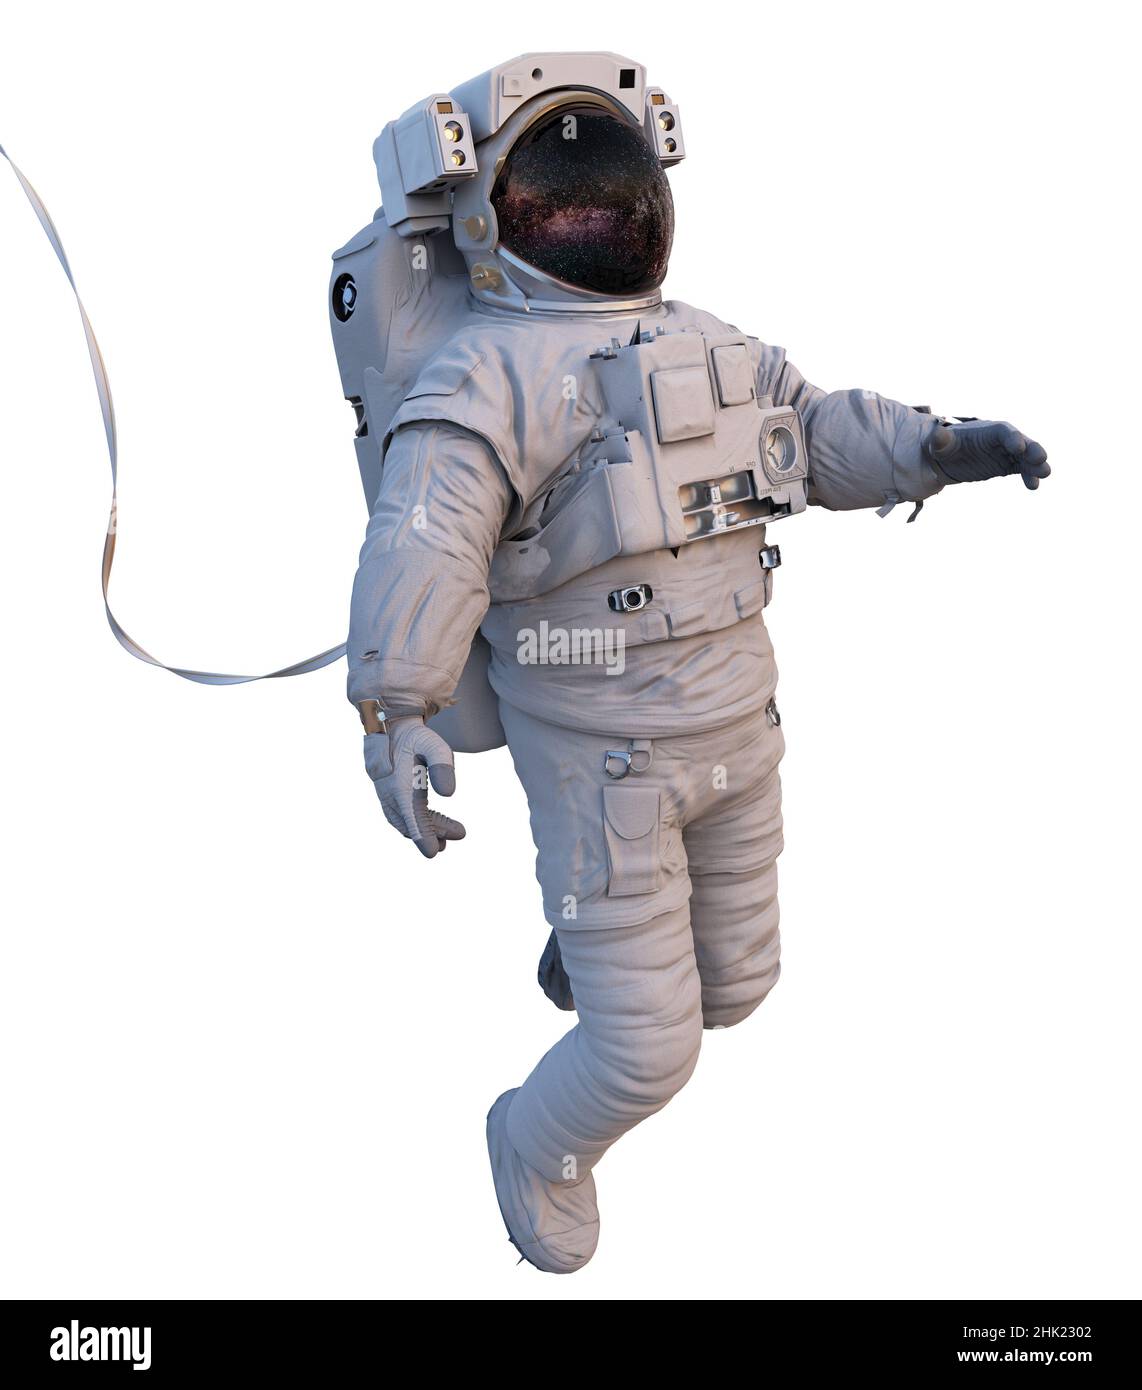 astronaute avec attache de sécurité dans l'espace, isolé sur fond blanc Banque D'Images